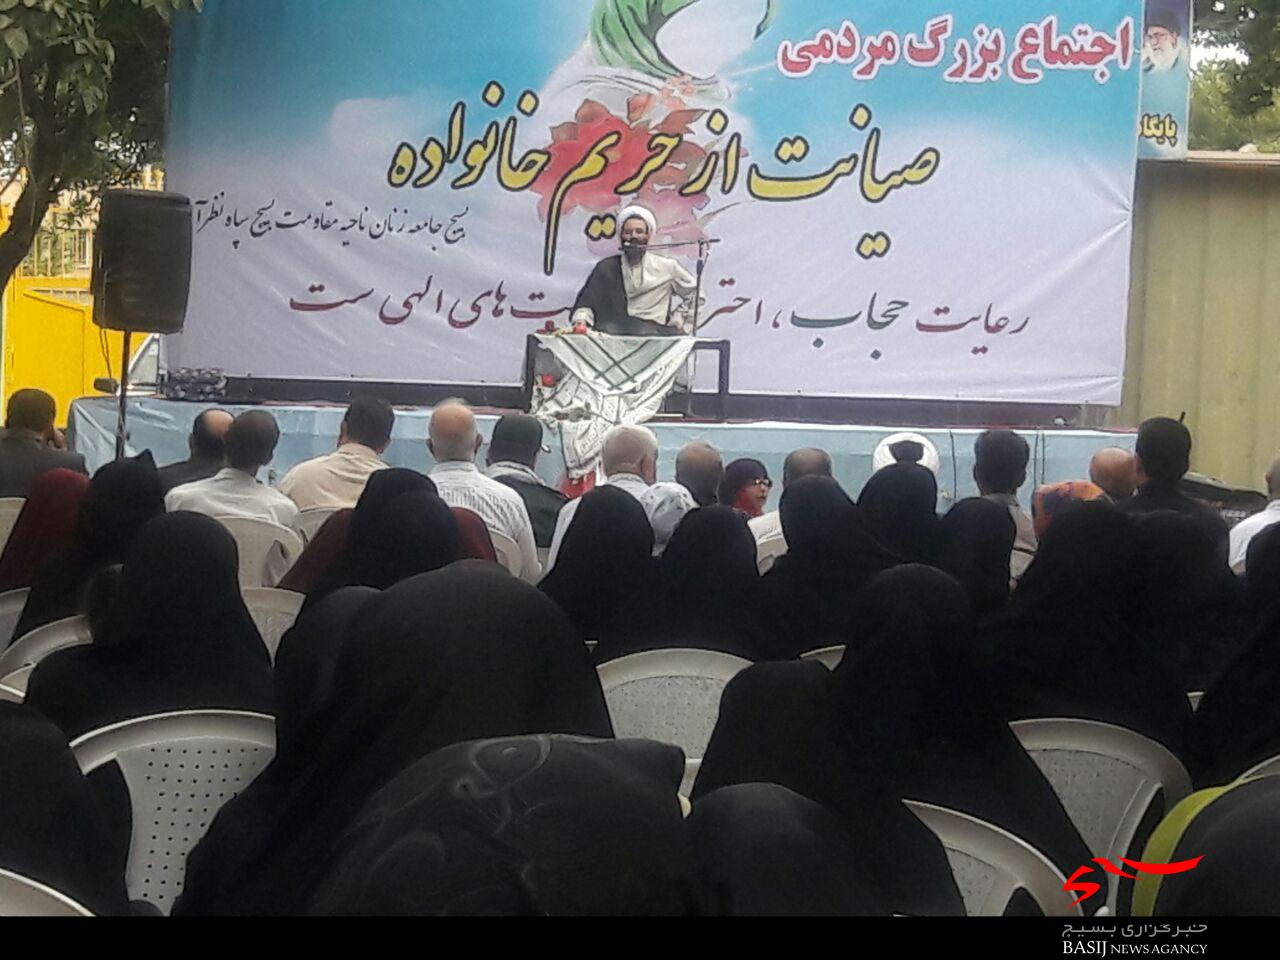 اجتماع بزرگ مردمی با عنوان صیانت از حریم خانواده در پارک شهر نظرآباد